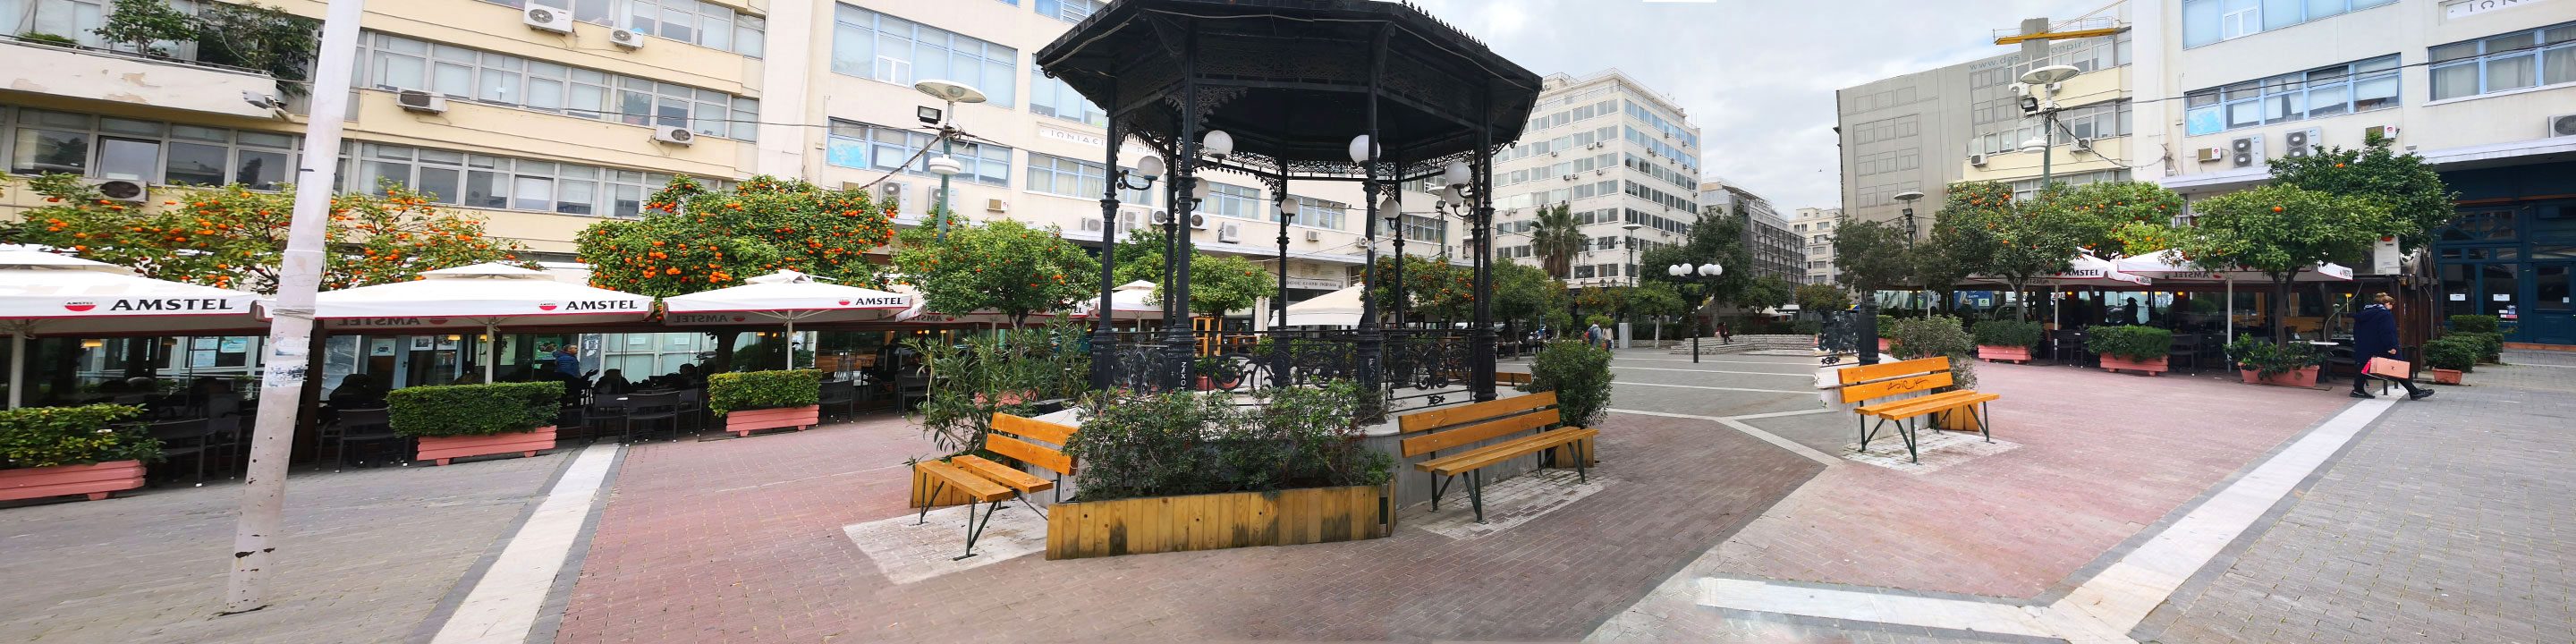 Main Square (Korai Square) in Piraeus 